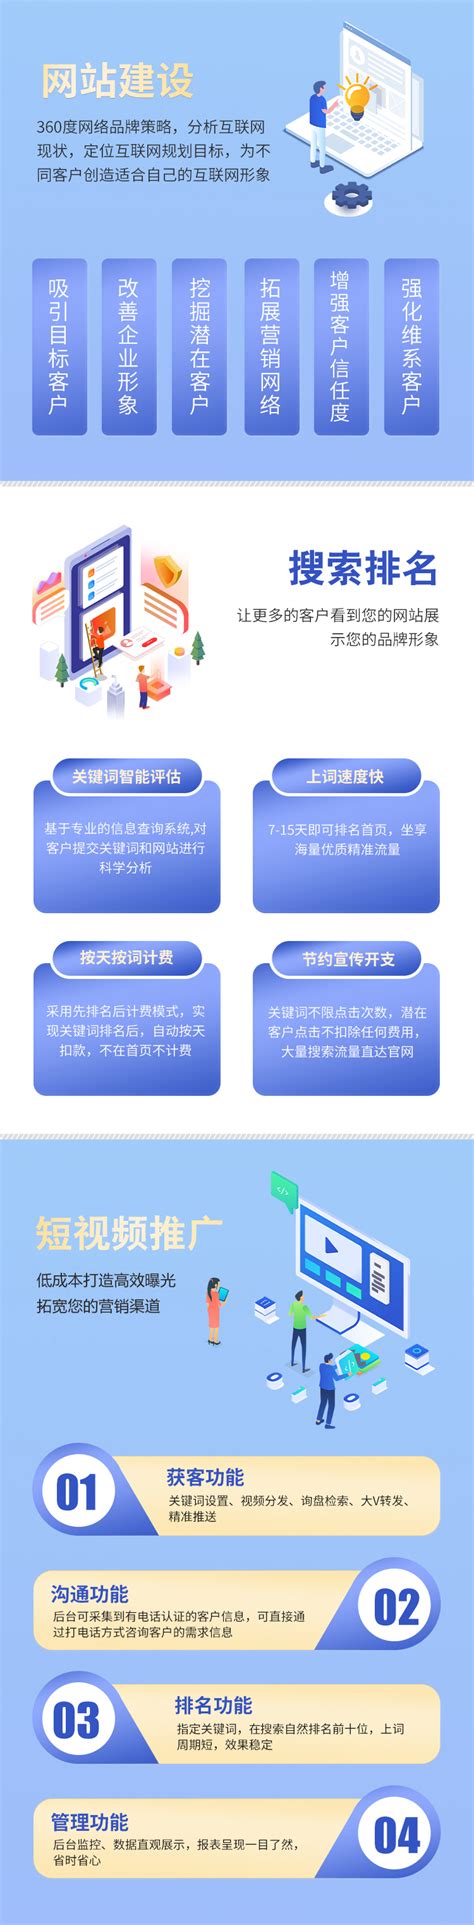 重庆网站建设目标